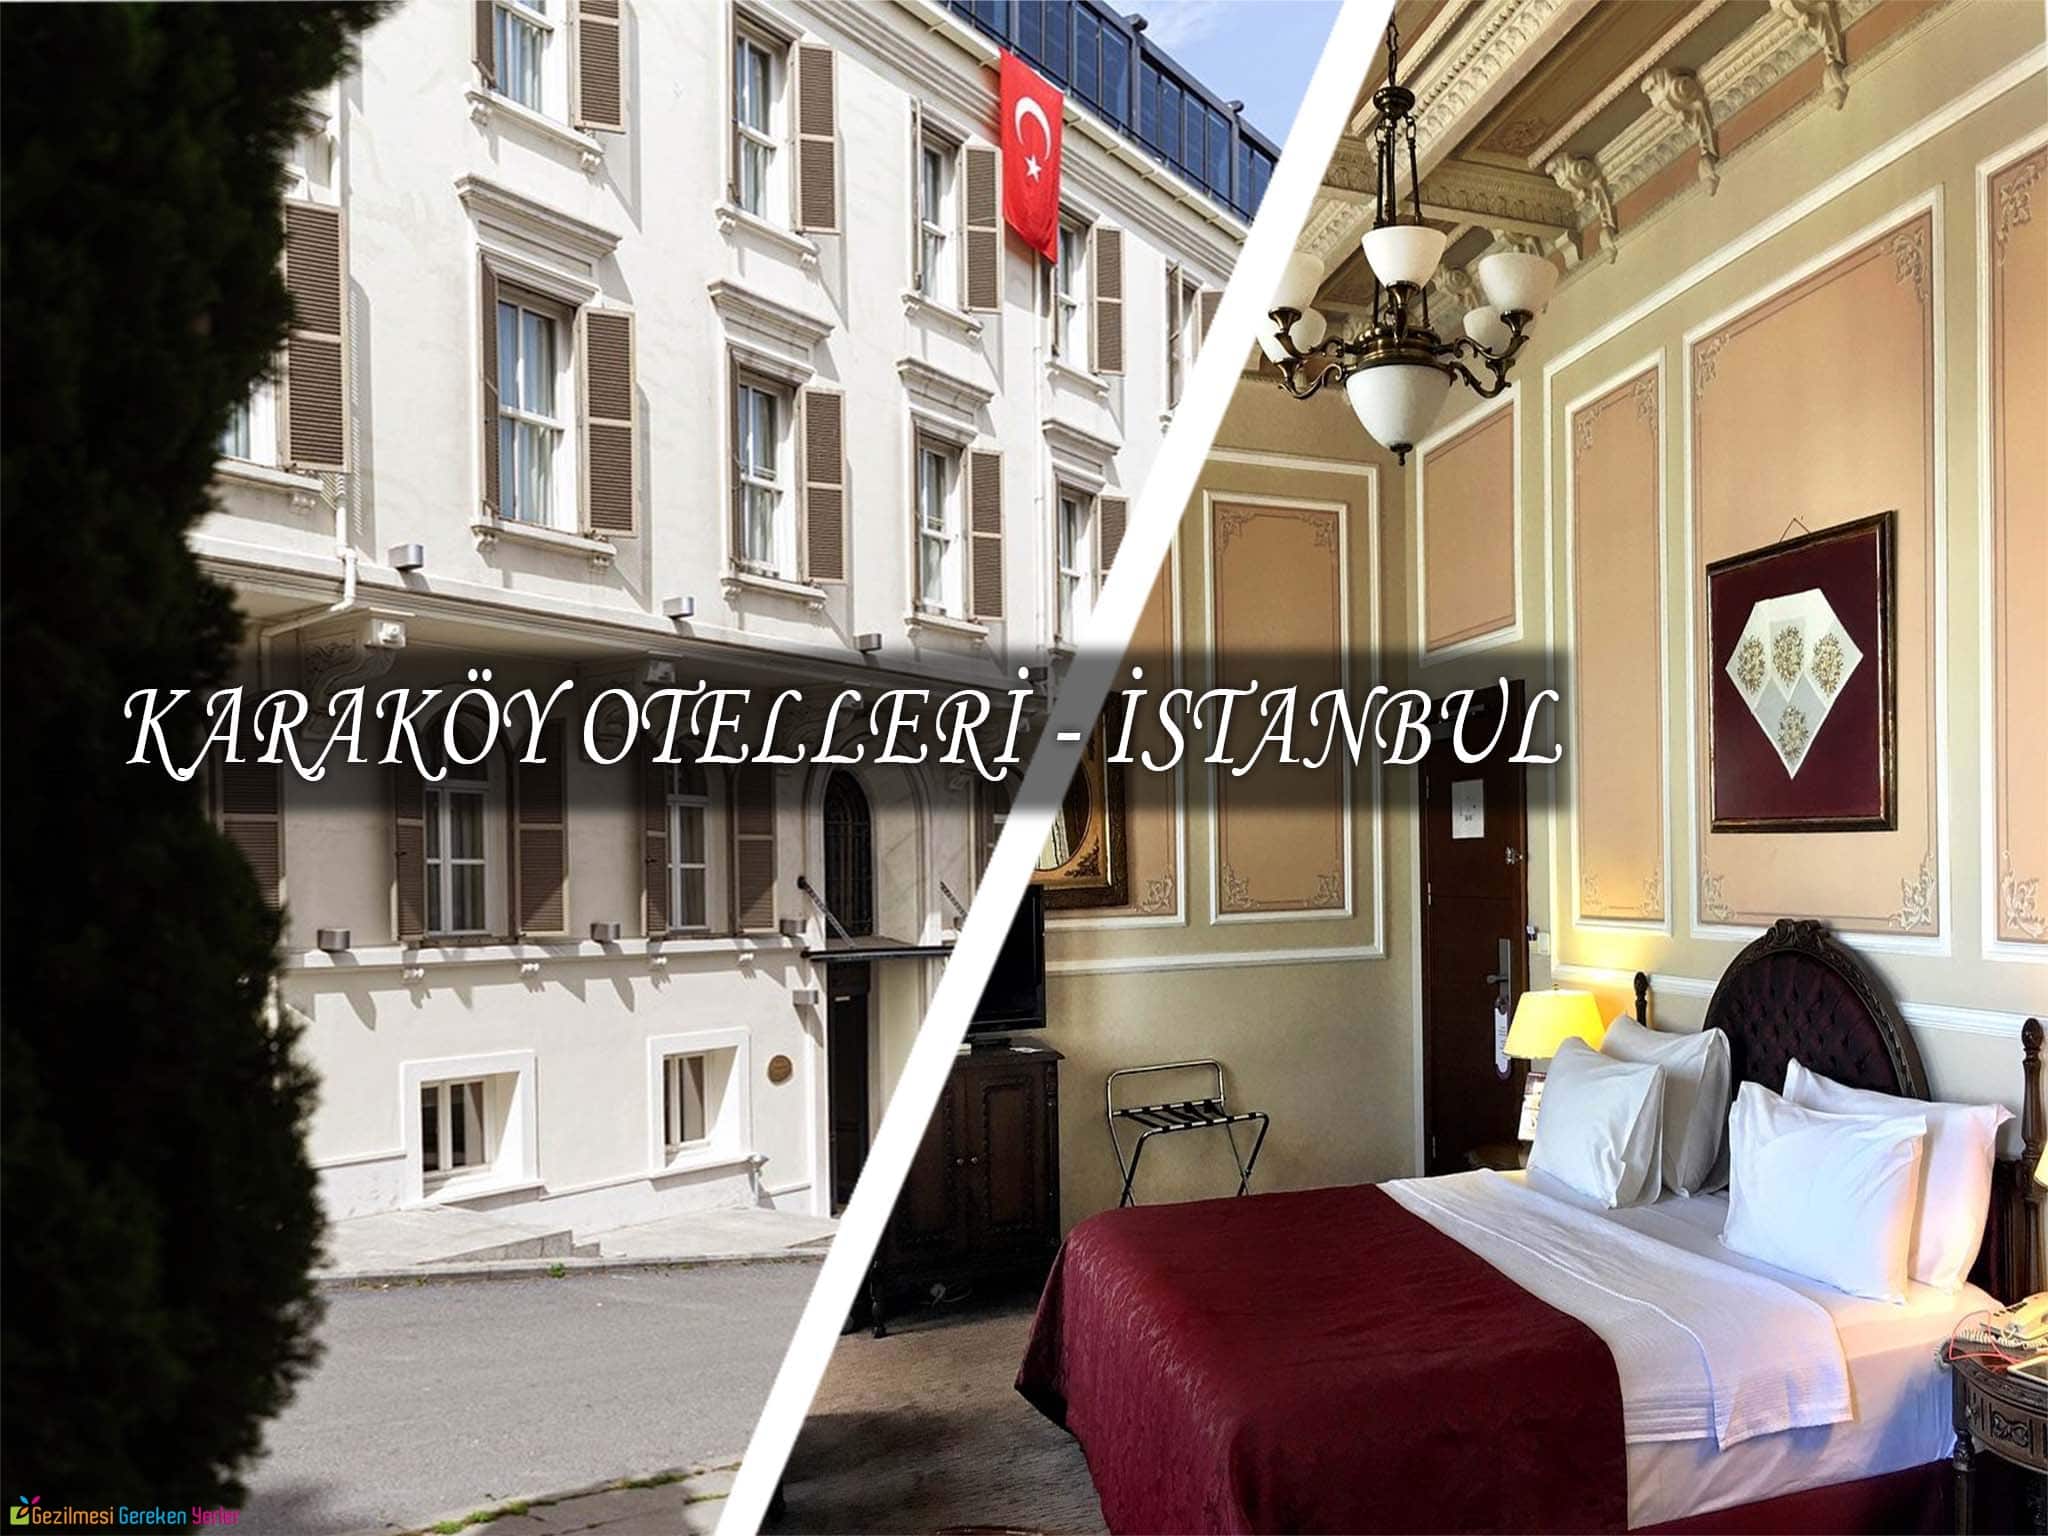 karakoy otelleri istanbul daki en iyi 10 otelin fiyatlari